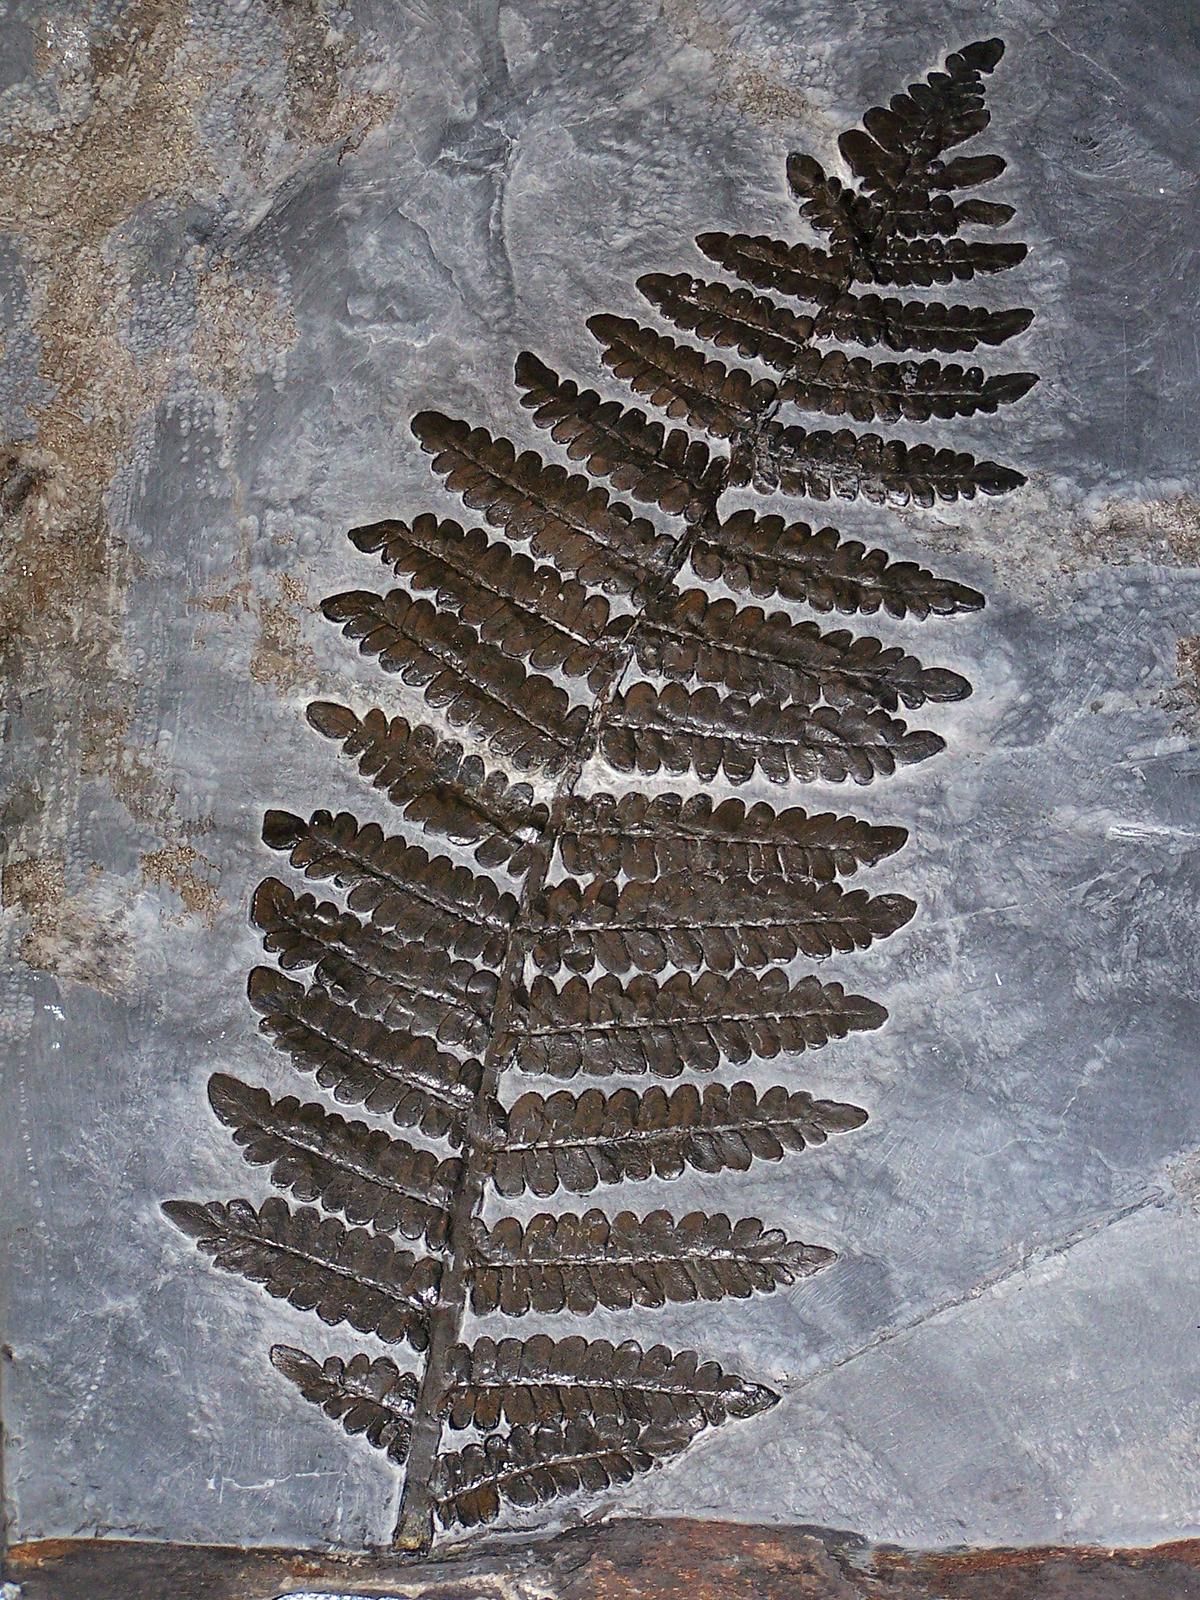 Fotografia przedstawia płaski kawałek szarawego węgla z odciskiem liścia paproci. Odcisk jest ciemny i wyraźny.